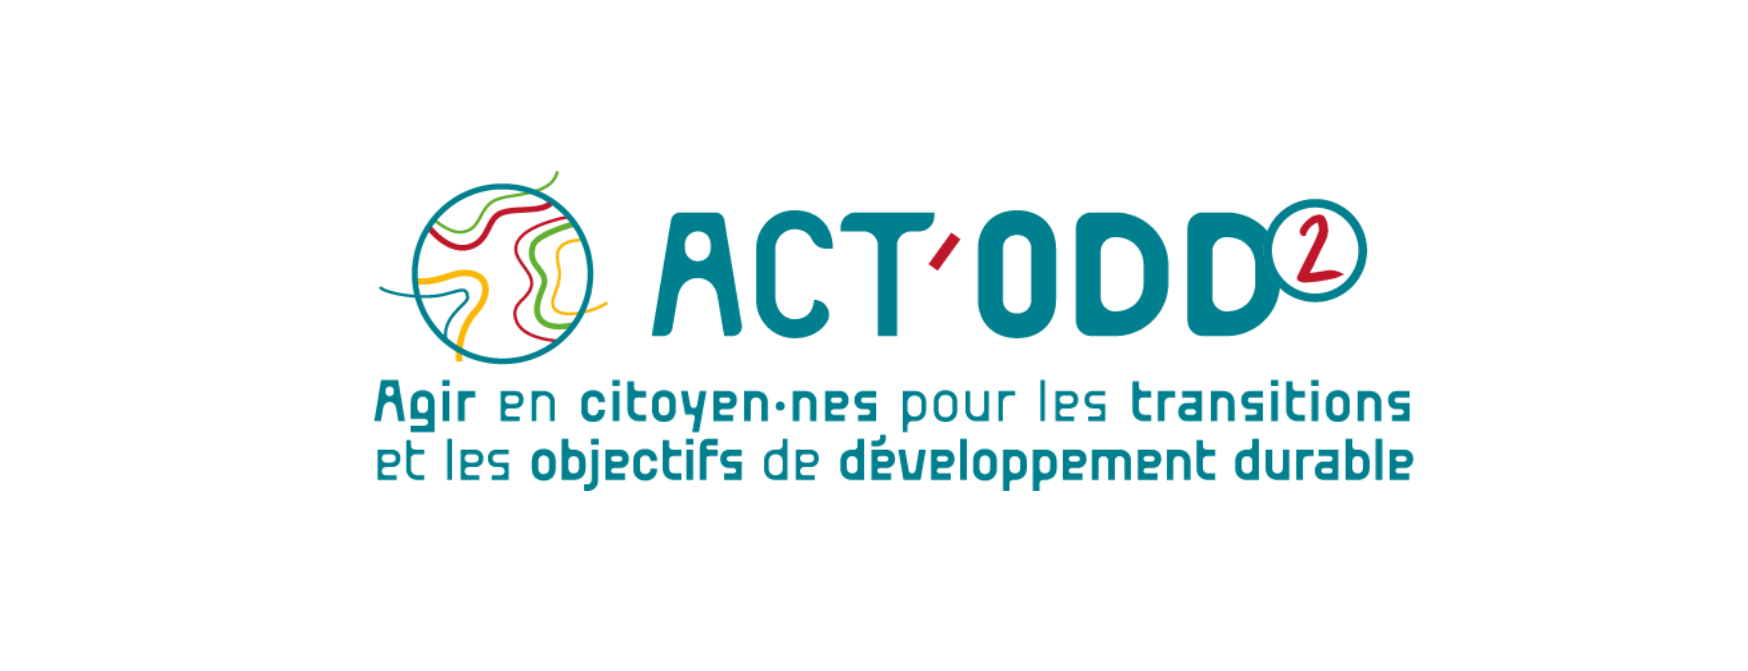 Logo_ACTODD2